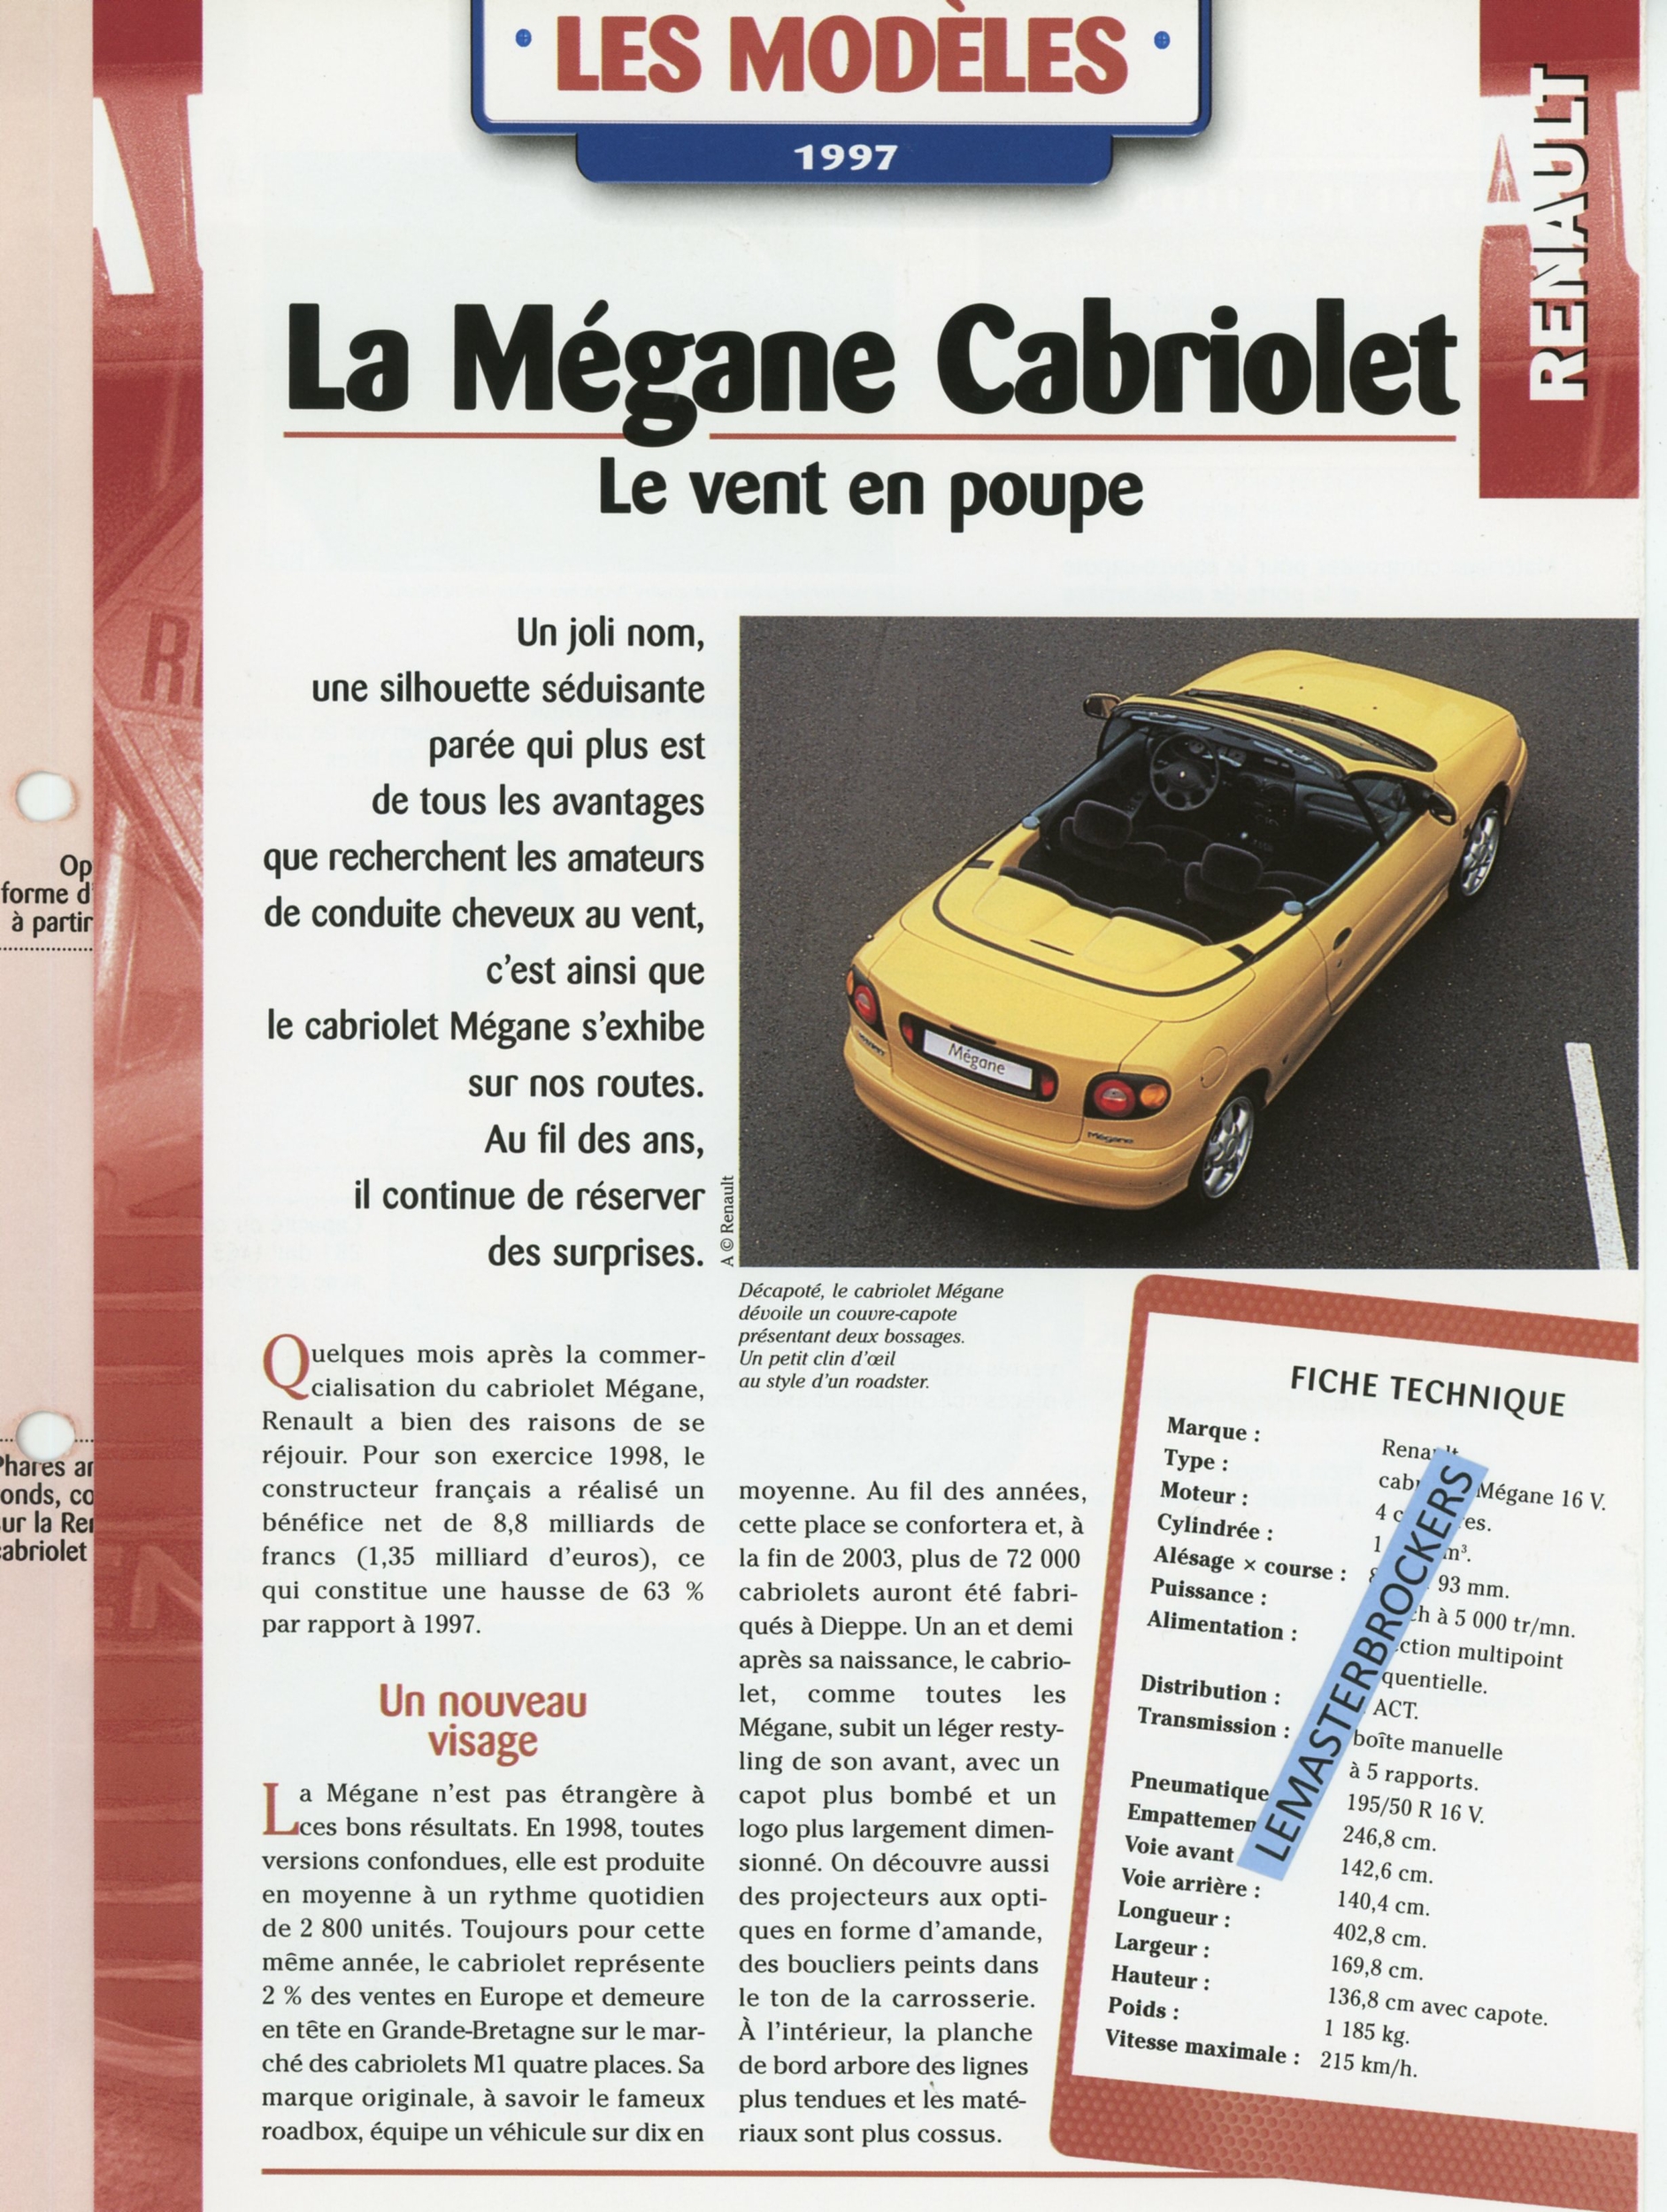 RENAULT MÉGANE CABRIOLET - FICHE AUTO 4 PAGES HACHETTE LES MODÈLES 1997